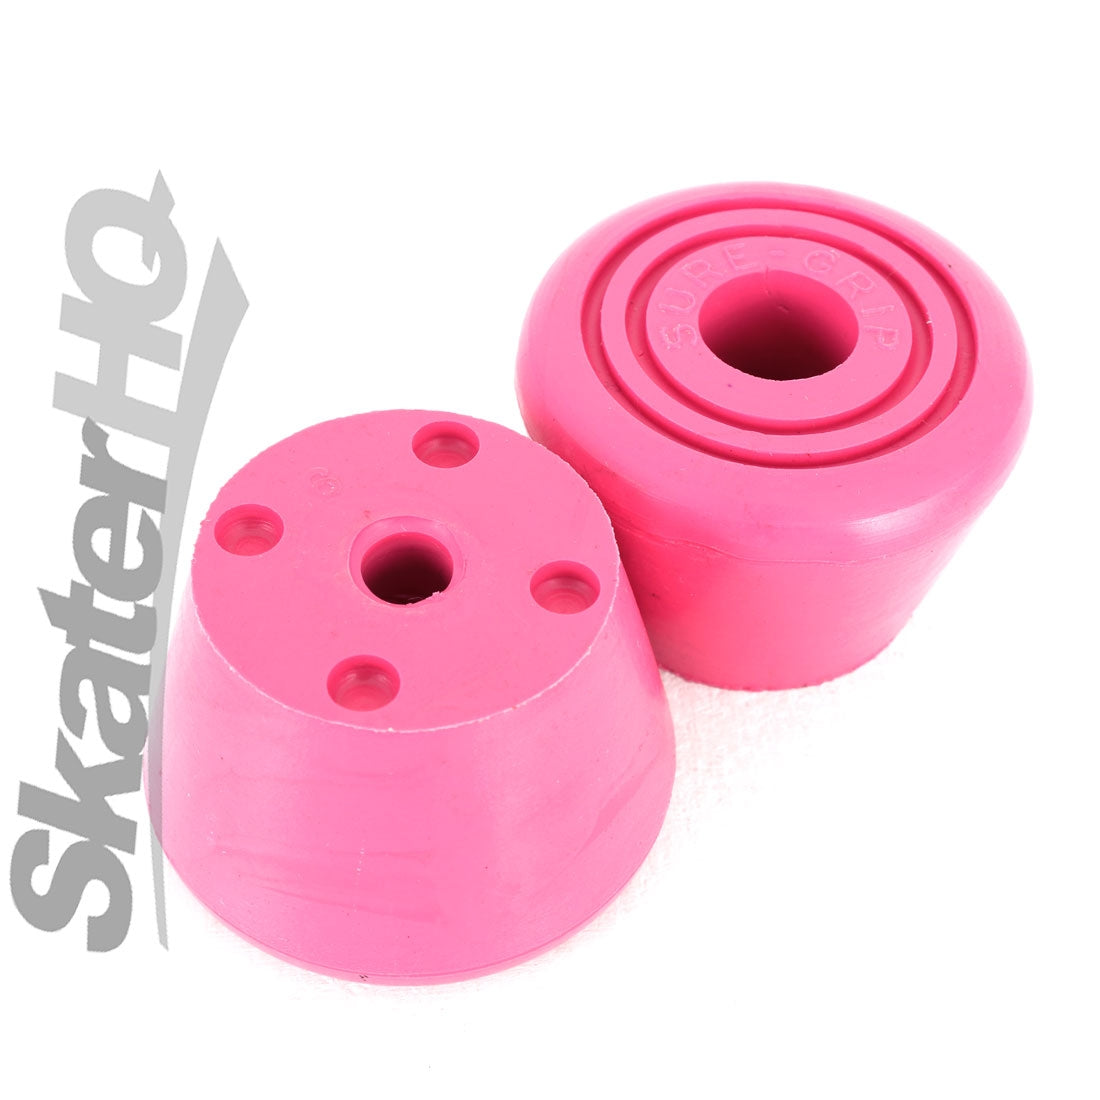 Sure-Grip Bullseye Toe Stop 2pk - Pink Roller Skate Accessories